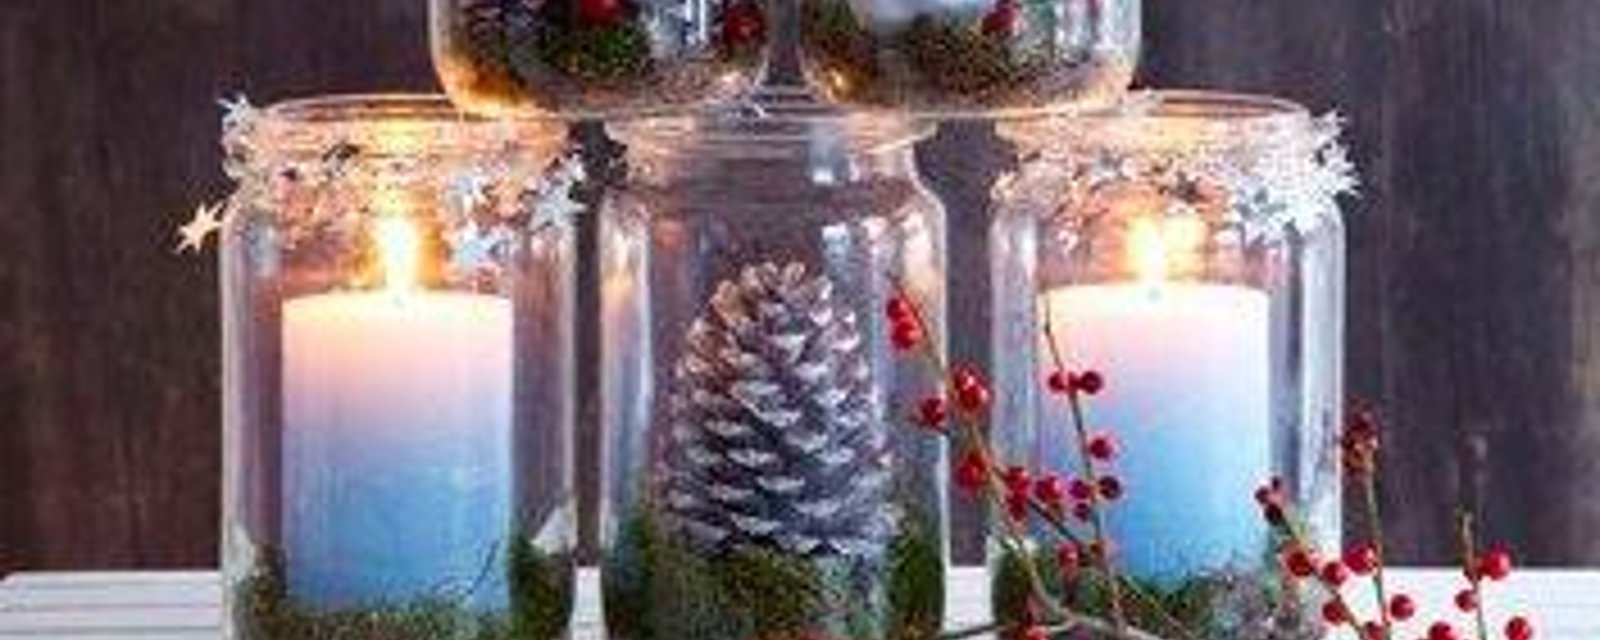 Fabriquez de jolies décorations hivernales avec des bocaux en verre!